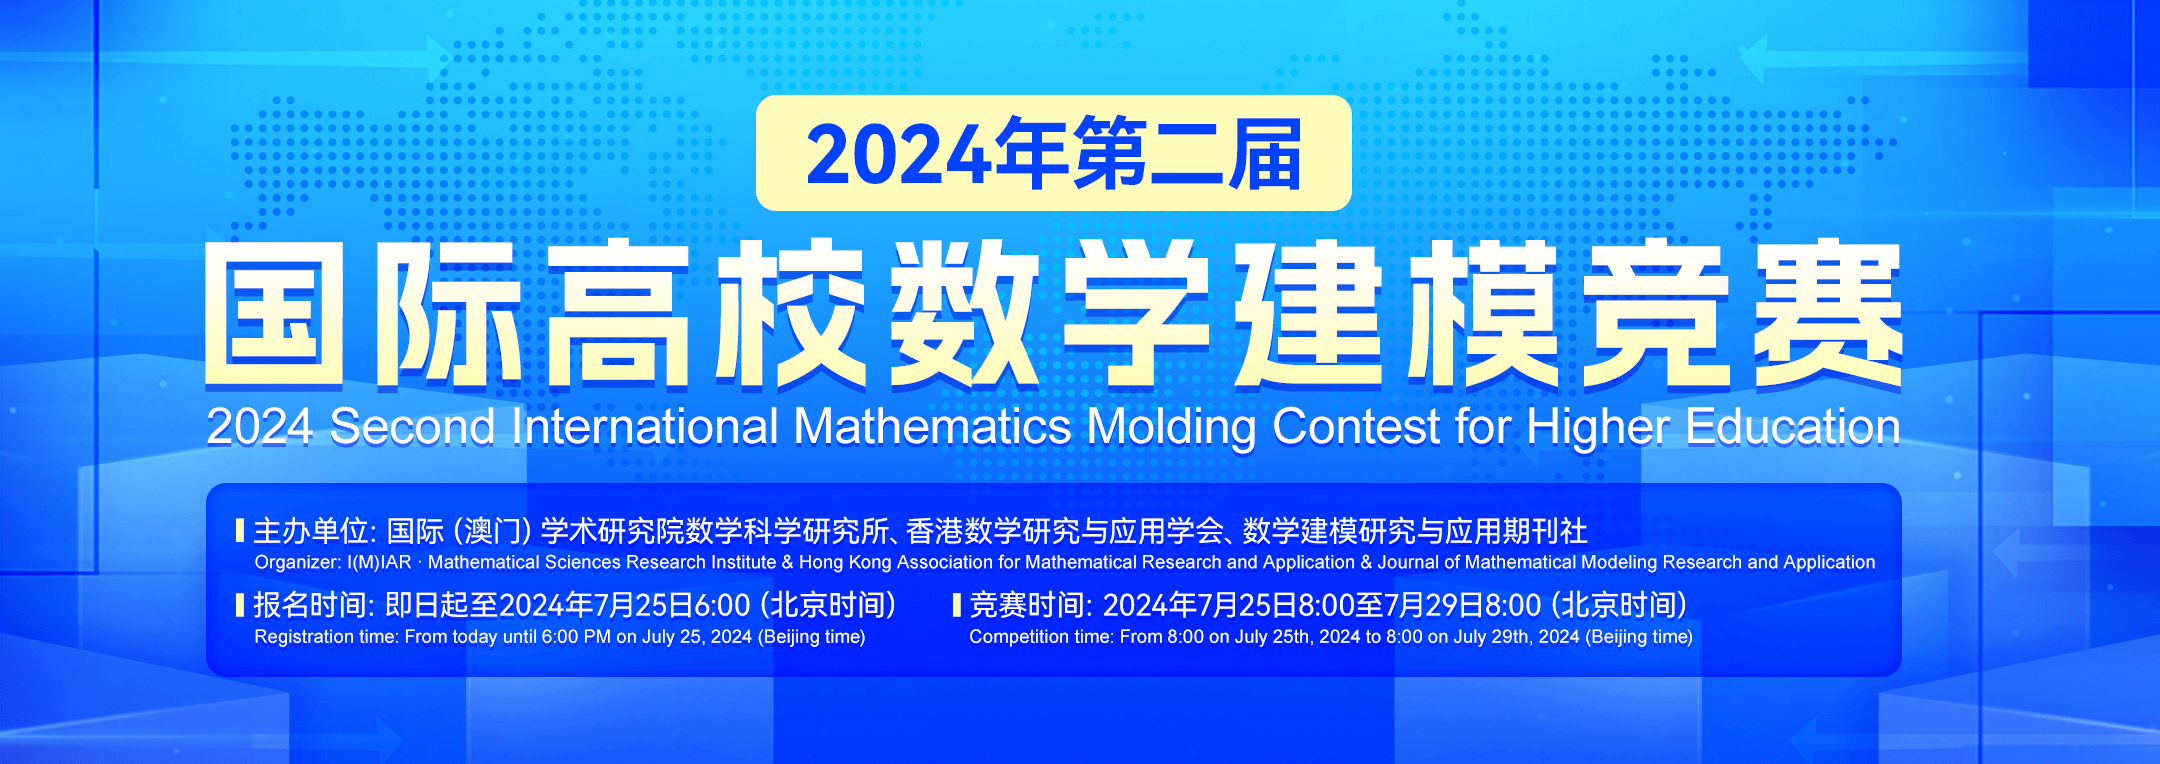 报名即享超多福利丨2024年国际高校数学建模竞赛火热报名中